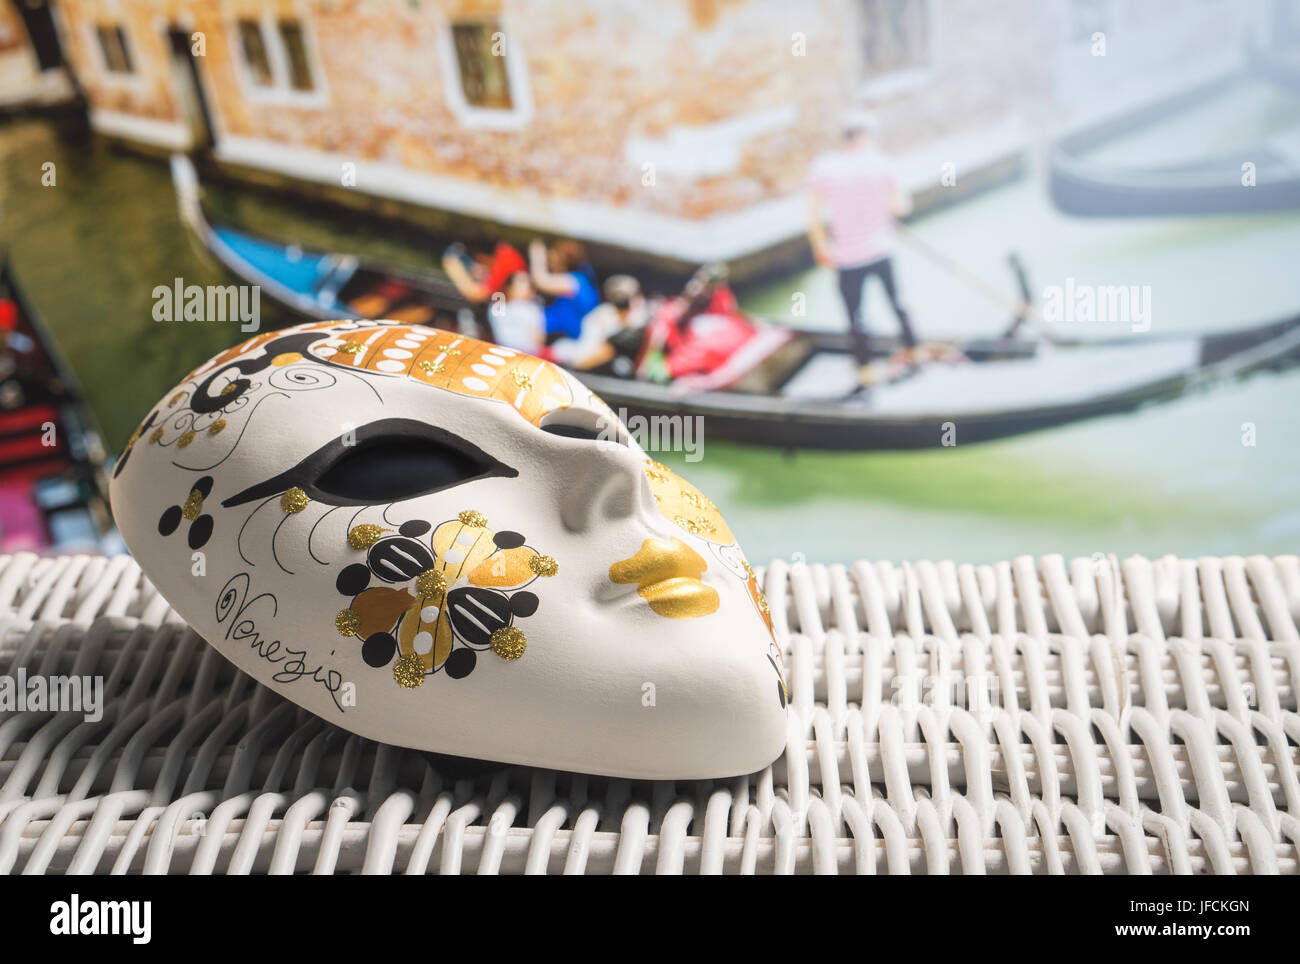 Masque authentique de Venise avec un gondolier et touristes en cabine dans l'arrière-plan. Souvenir d'or vénitien et bateau dans le canal. Banque D'Images